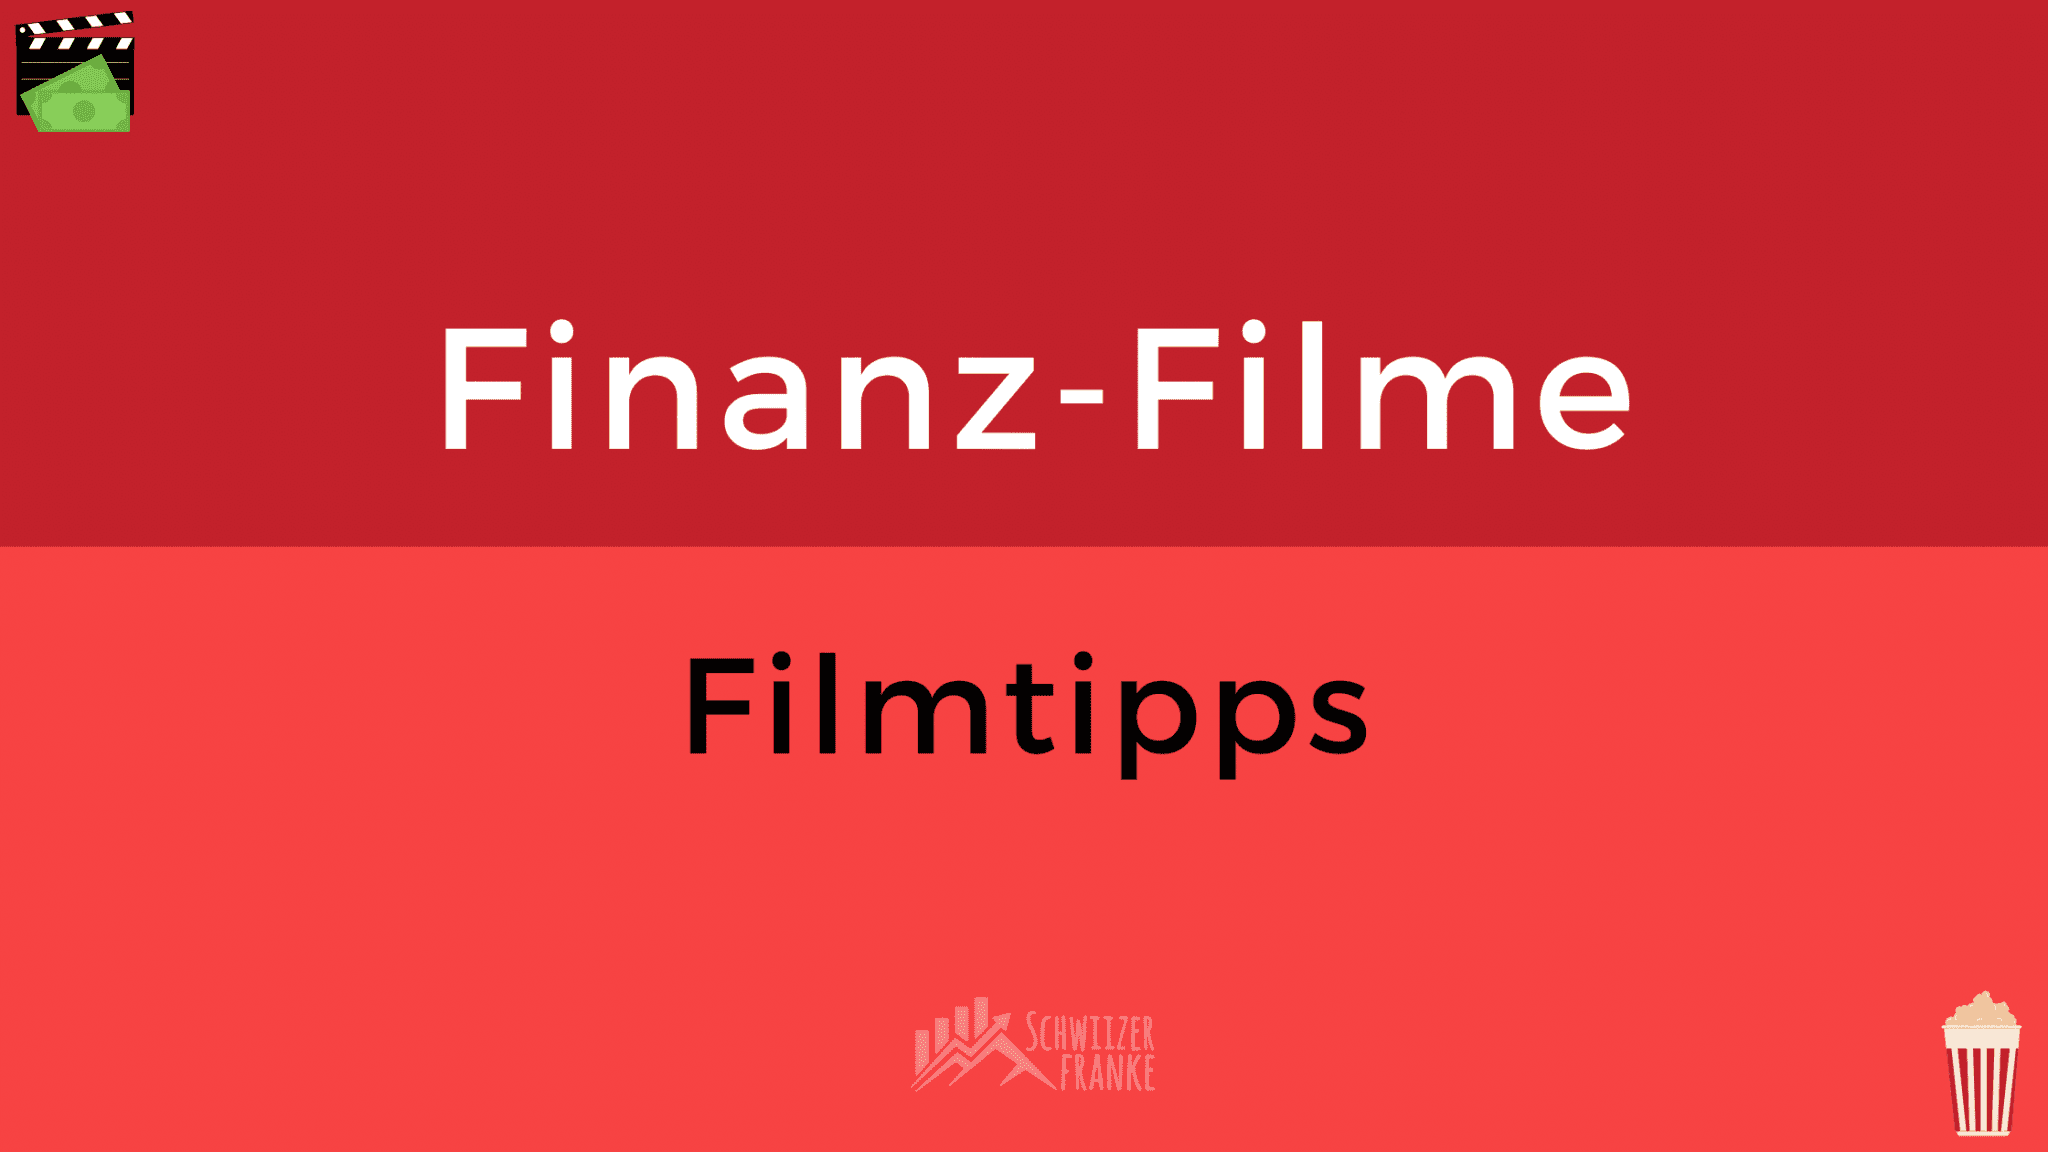 Die Besten Finanz Filme Filmtipps Finanzfilme über Geld Filme über Finanzen Investment Filme Geldfilme